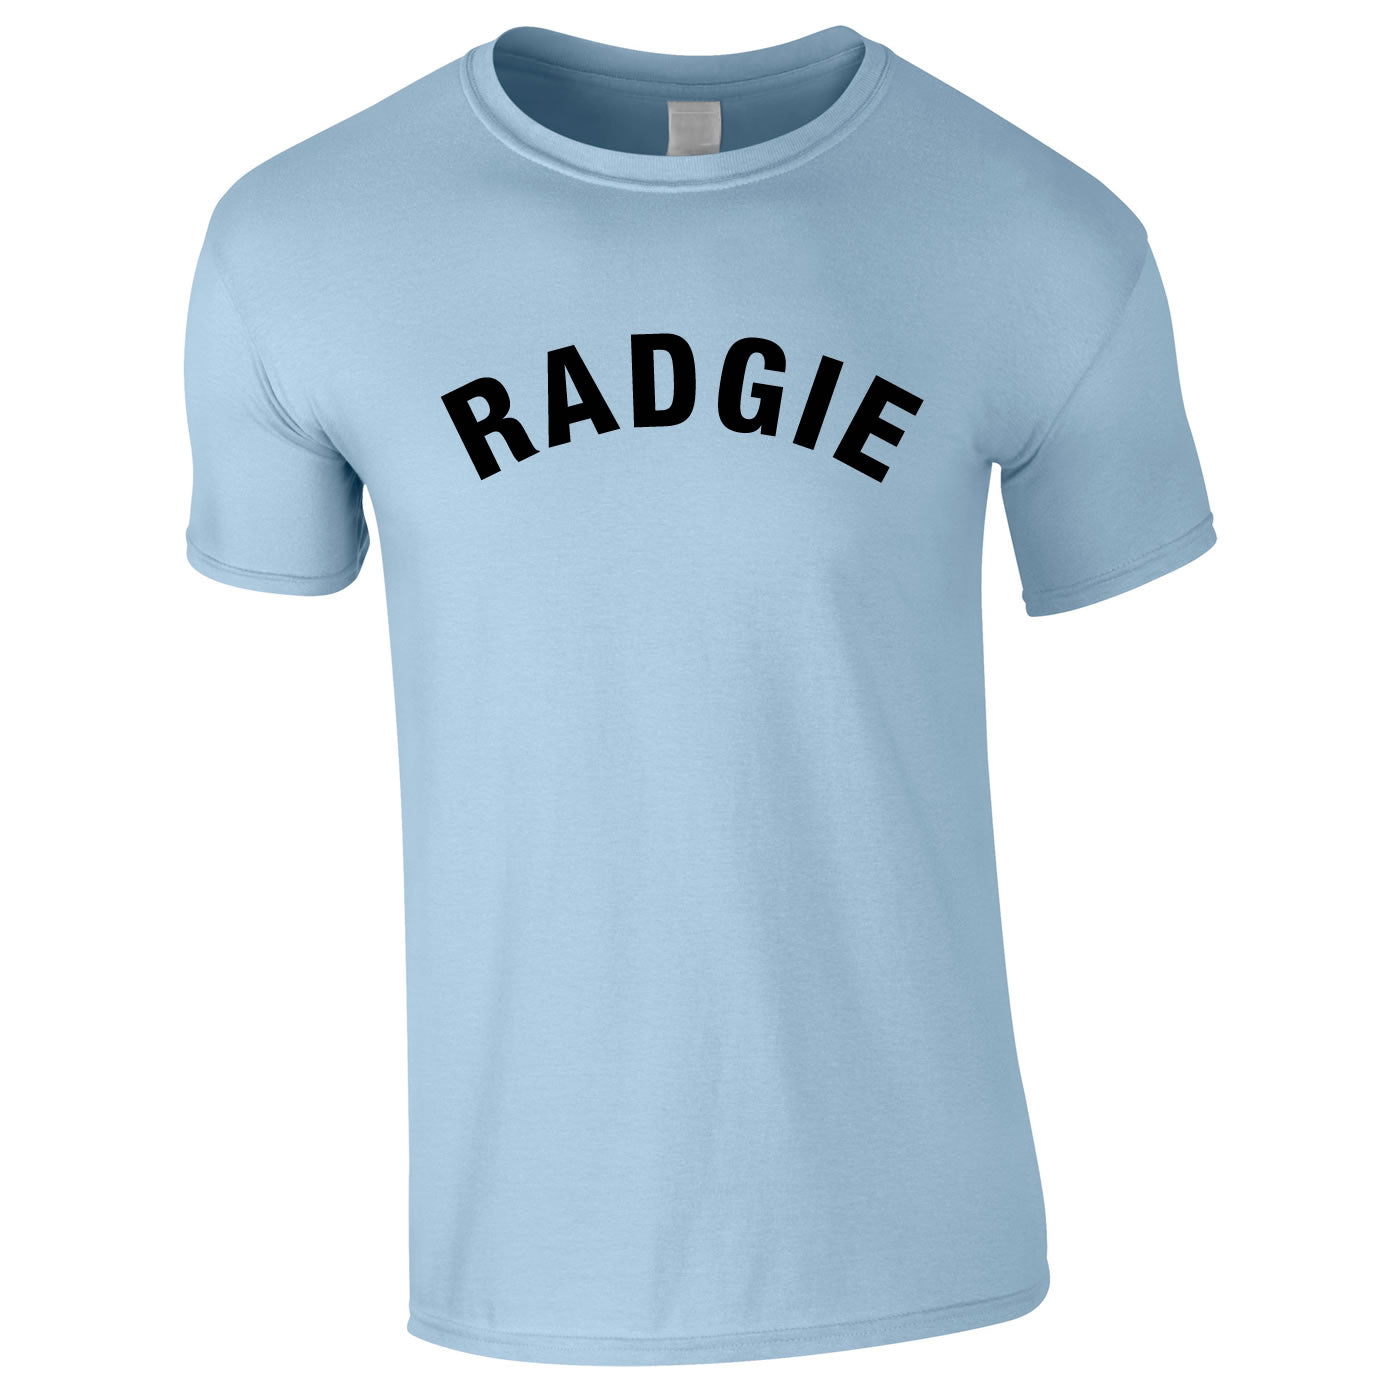 Radgie T Shirt